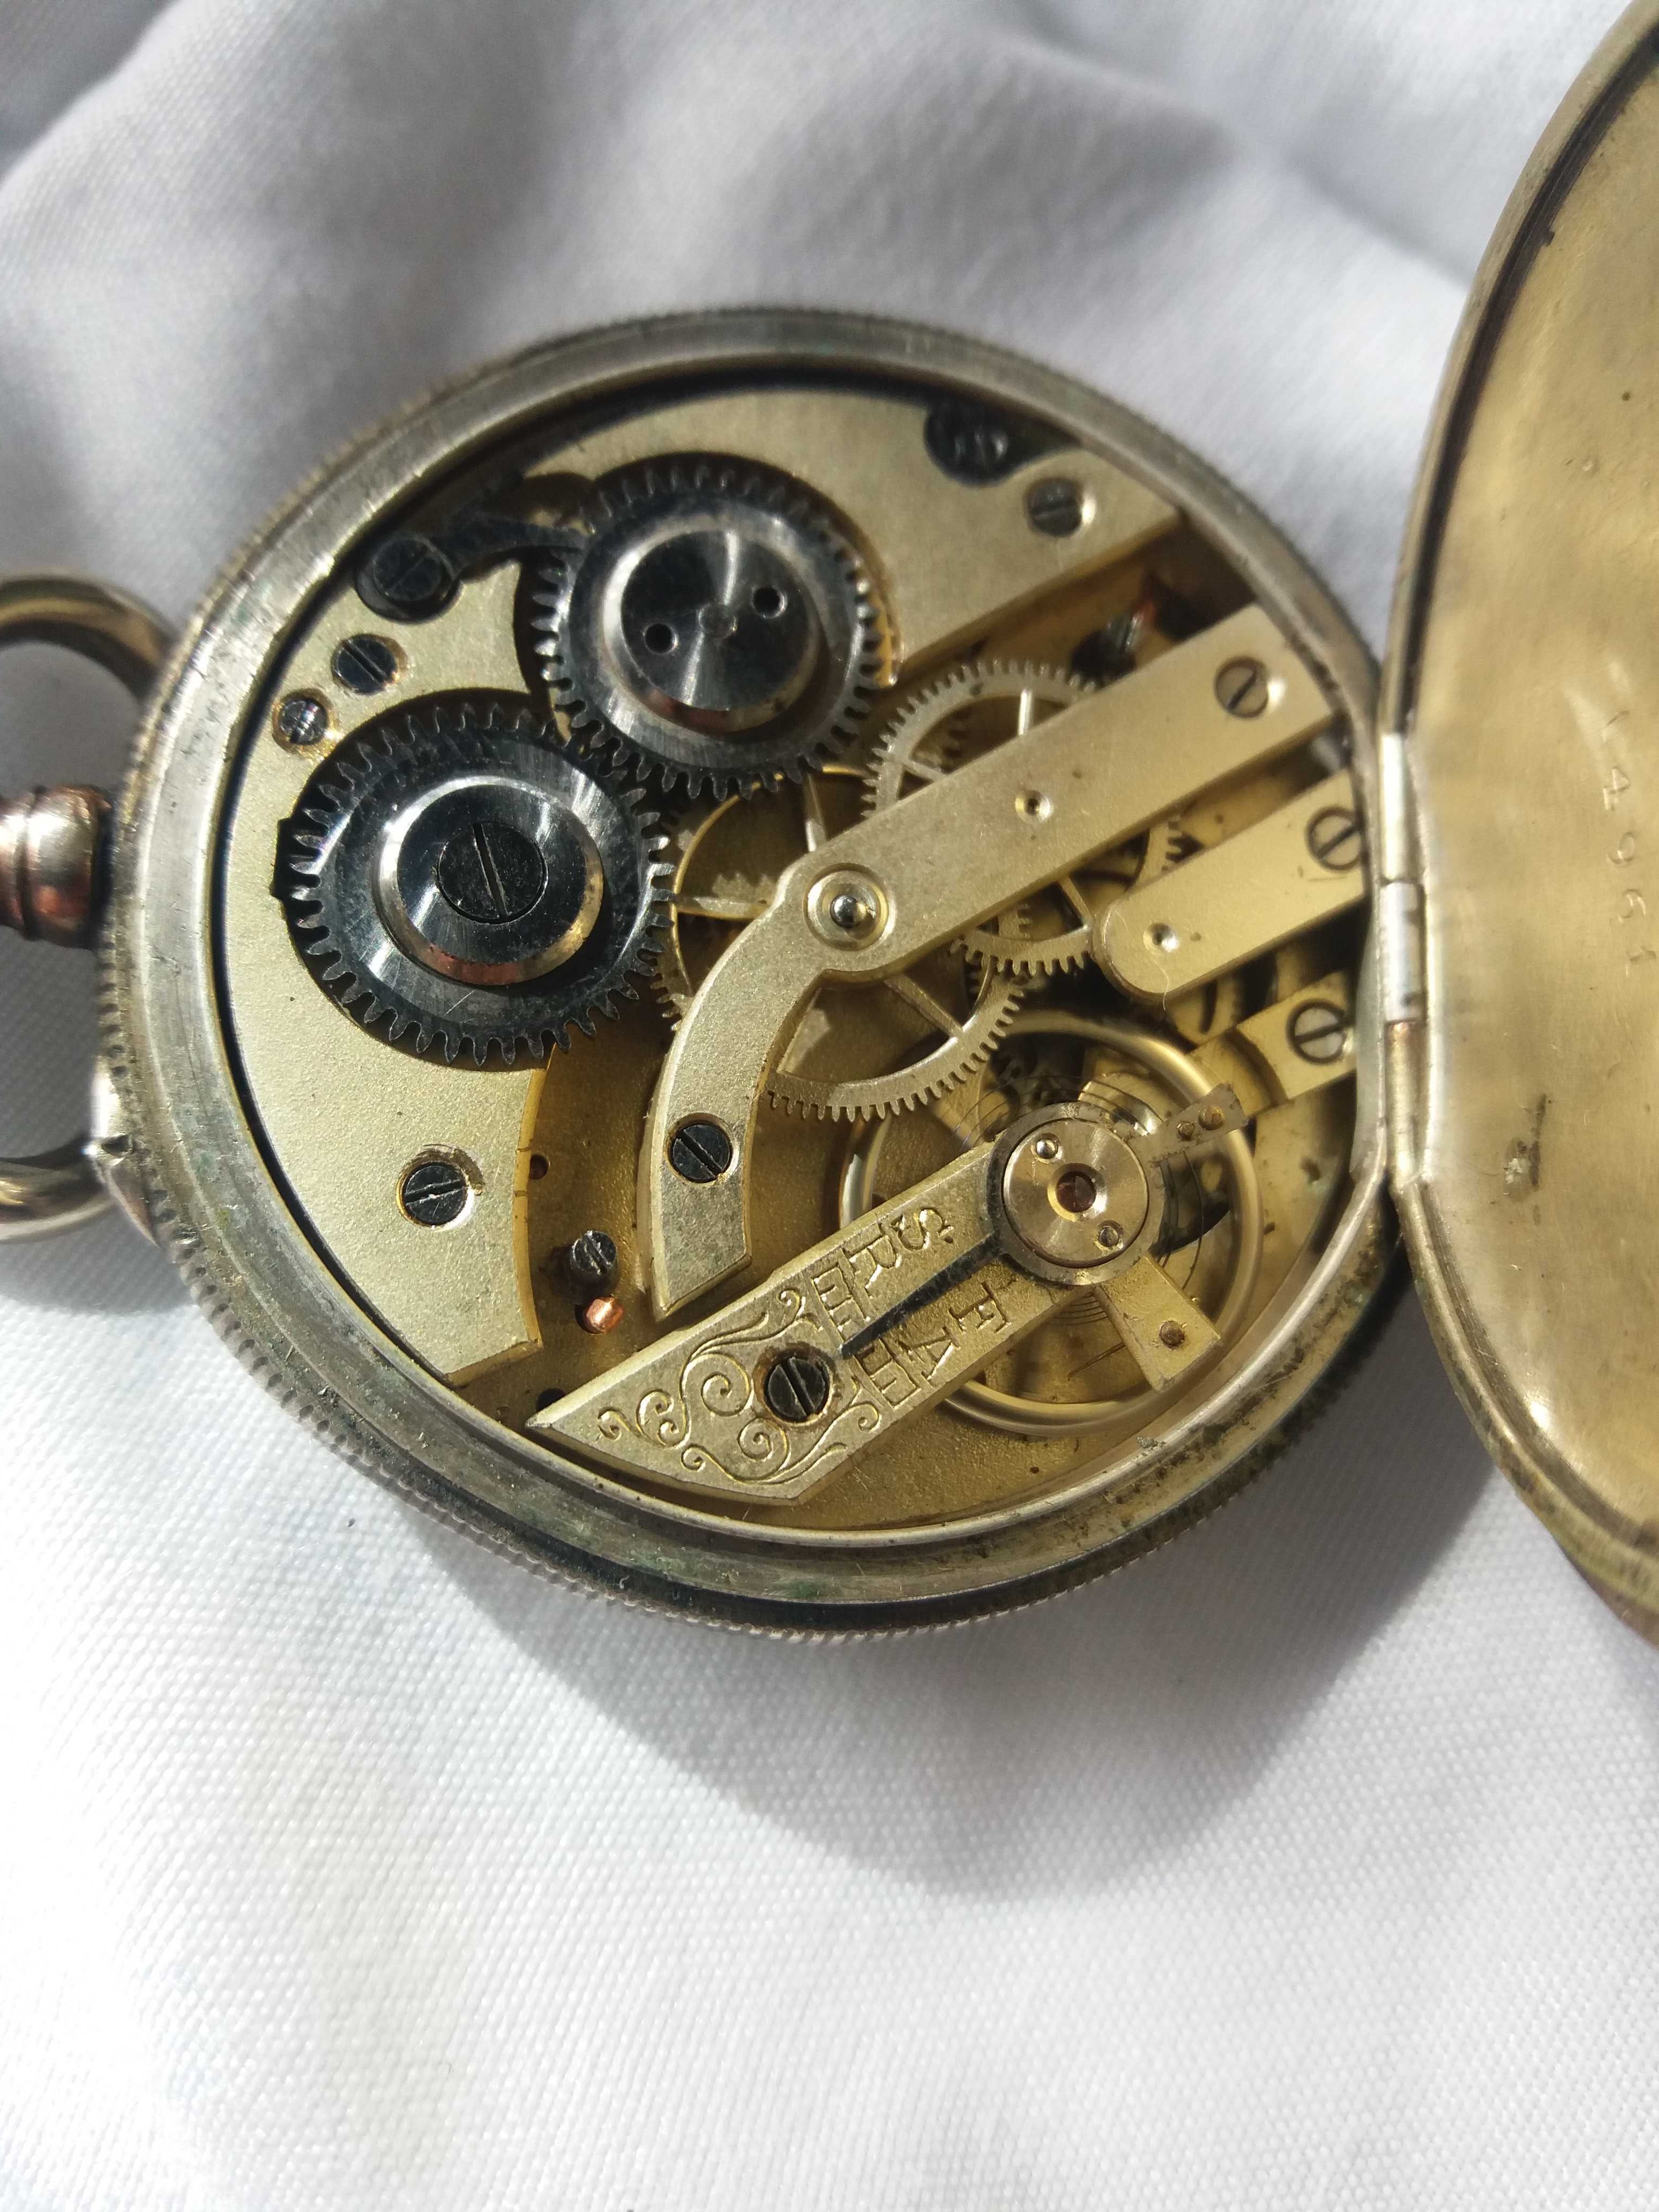 Srebrny zegarek kieszonkowy 6 rubis antyk